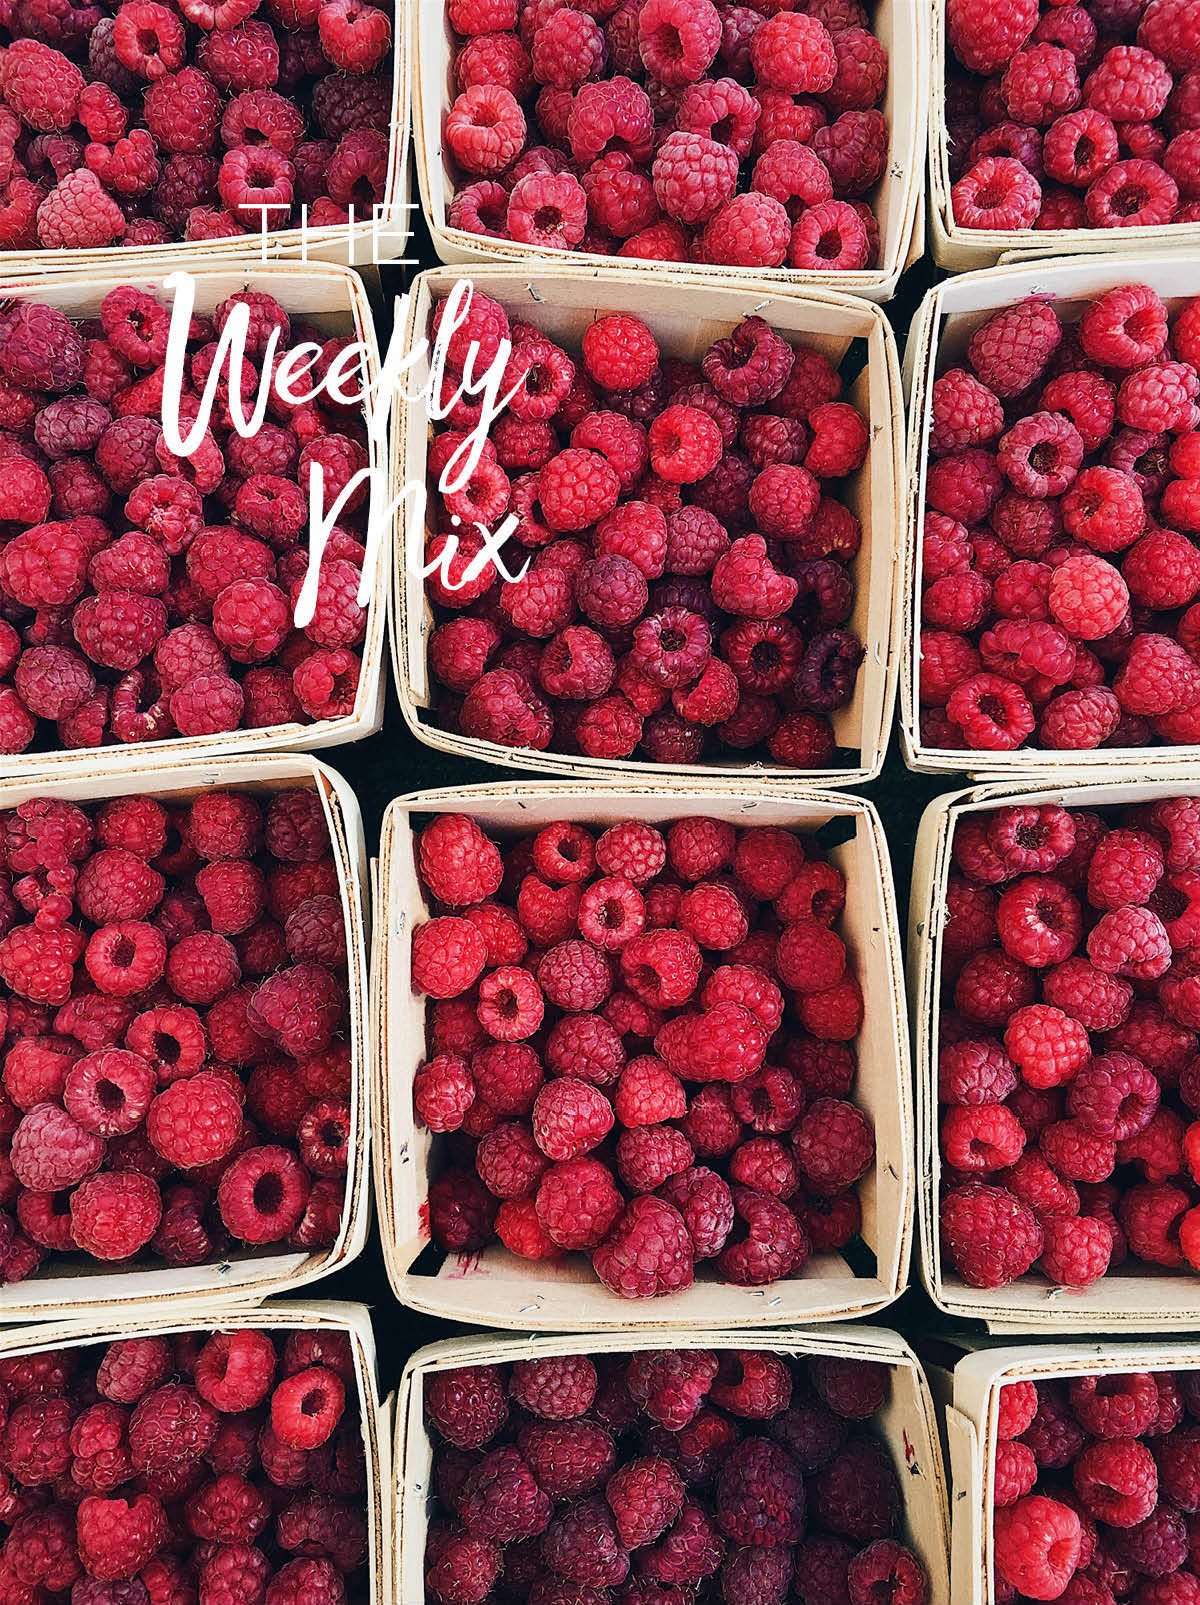 Summer Raspberries